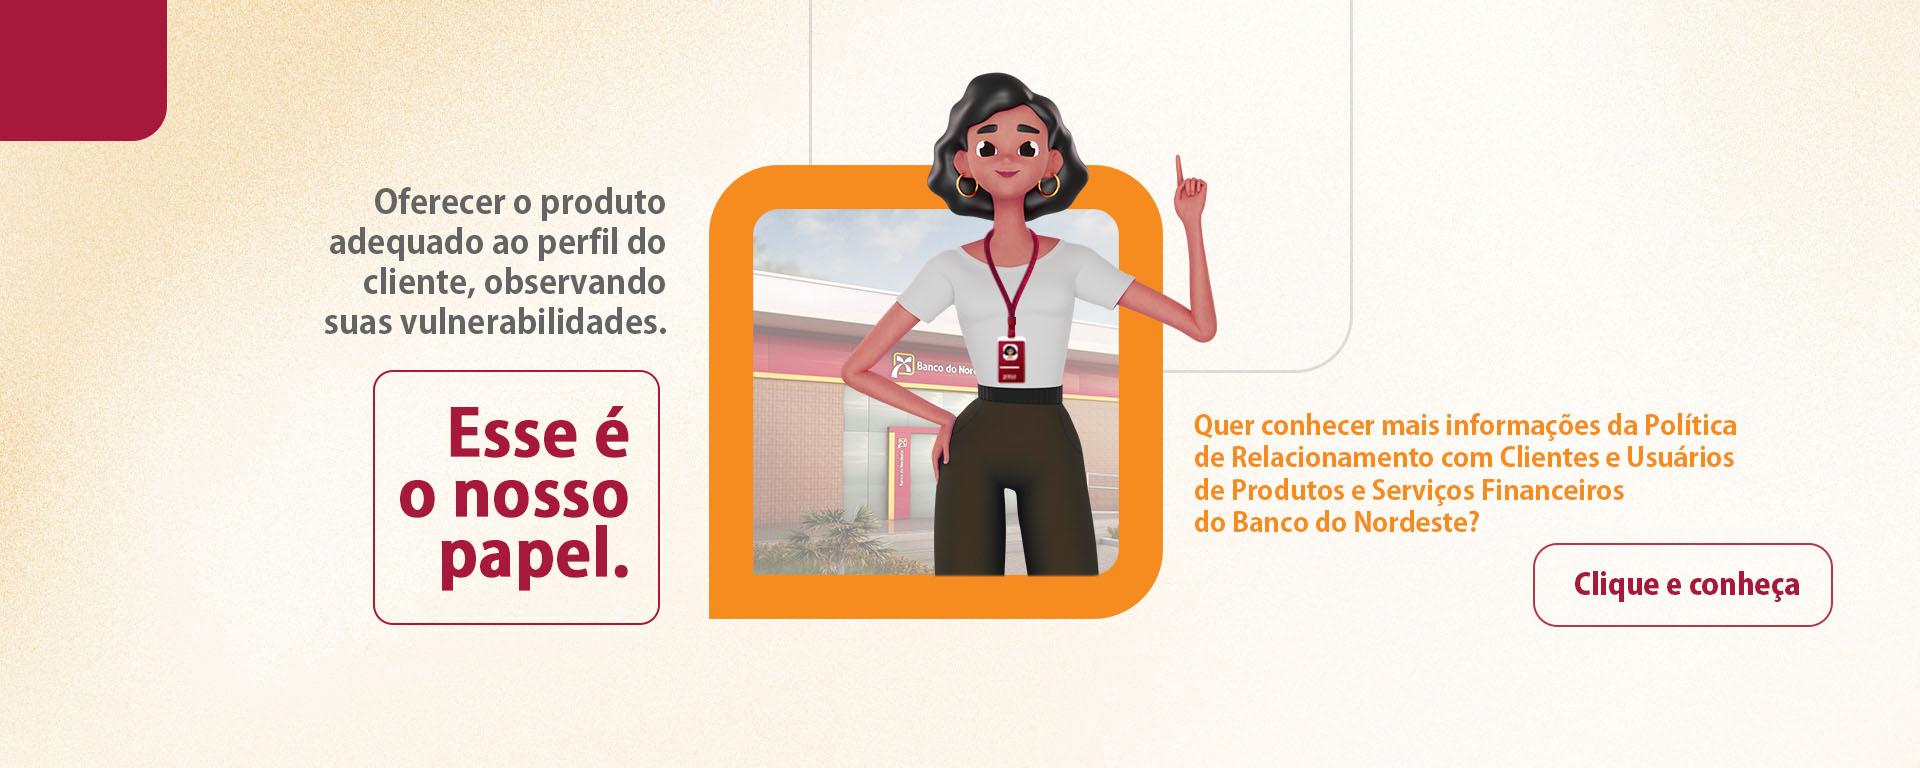 JOGO DA FORCA': Descubra qual é o órgão oculto no quadro – Metro